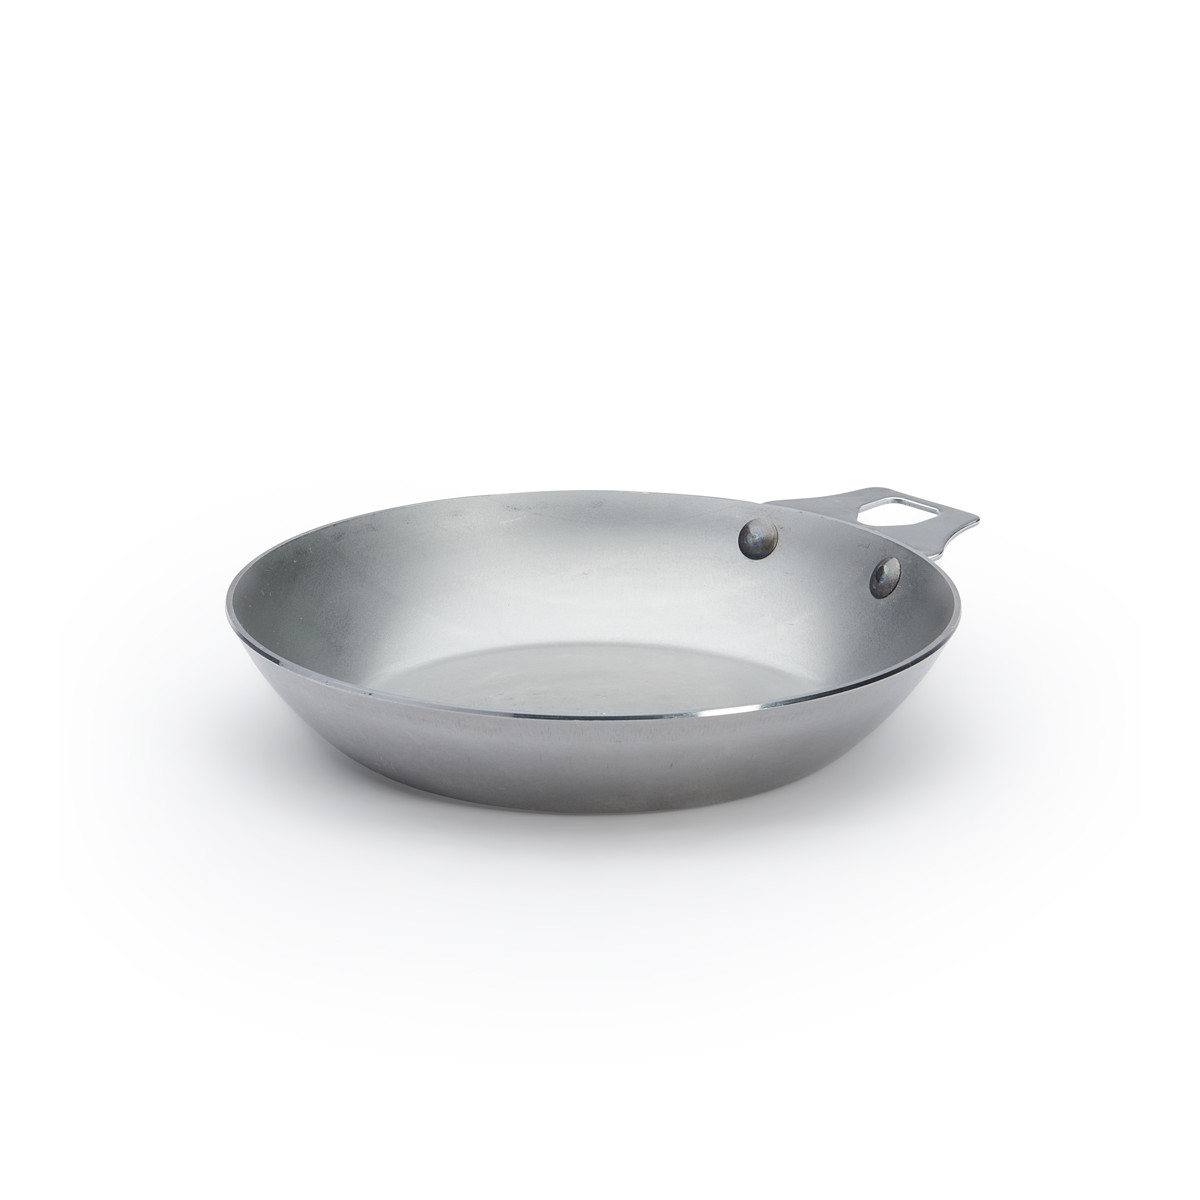 de Buyer Cookware: Fry Pans, Skillets & More